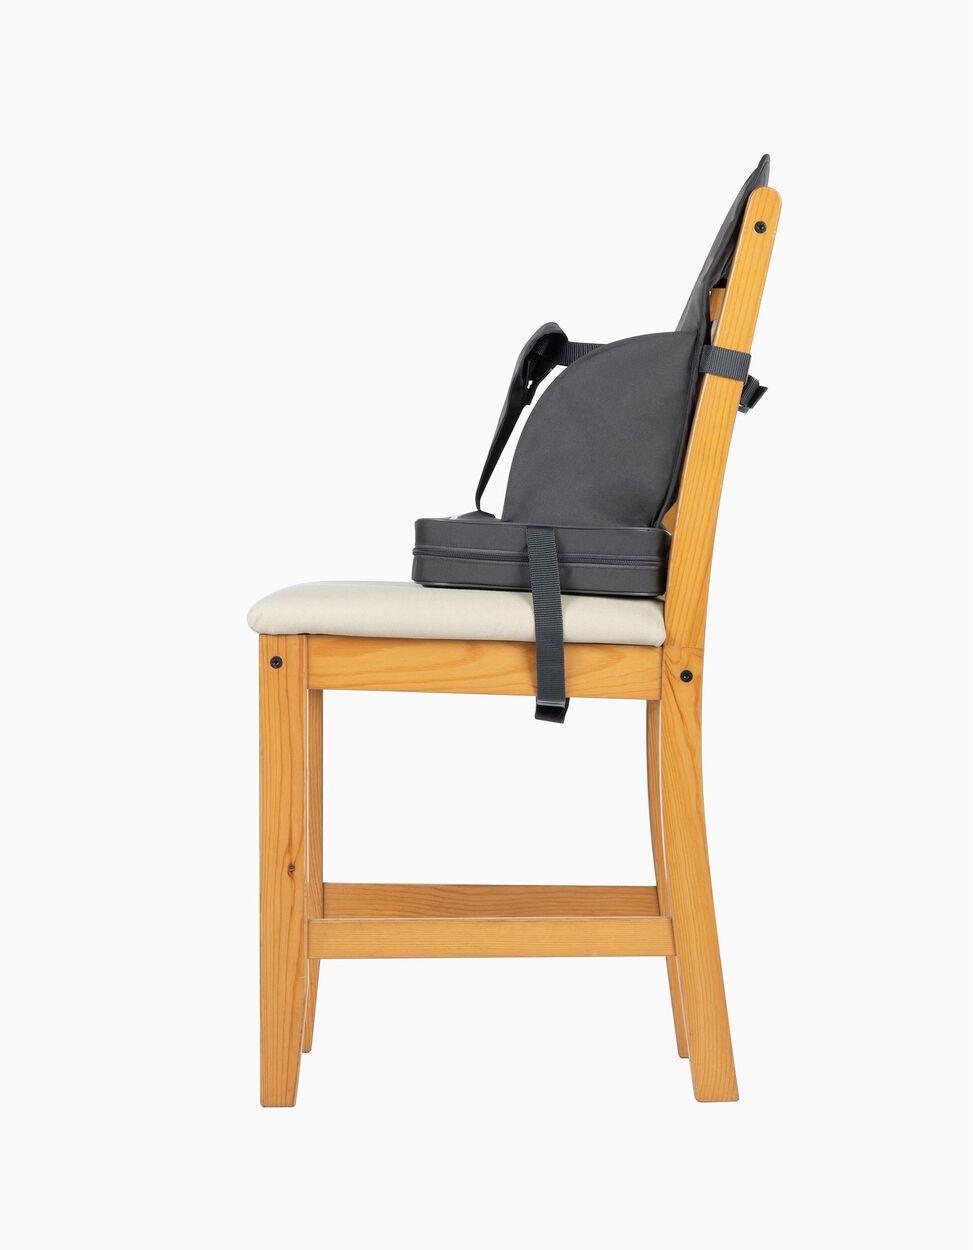 Cadeira De Refeição Bebe Confort Booster, Graphite